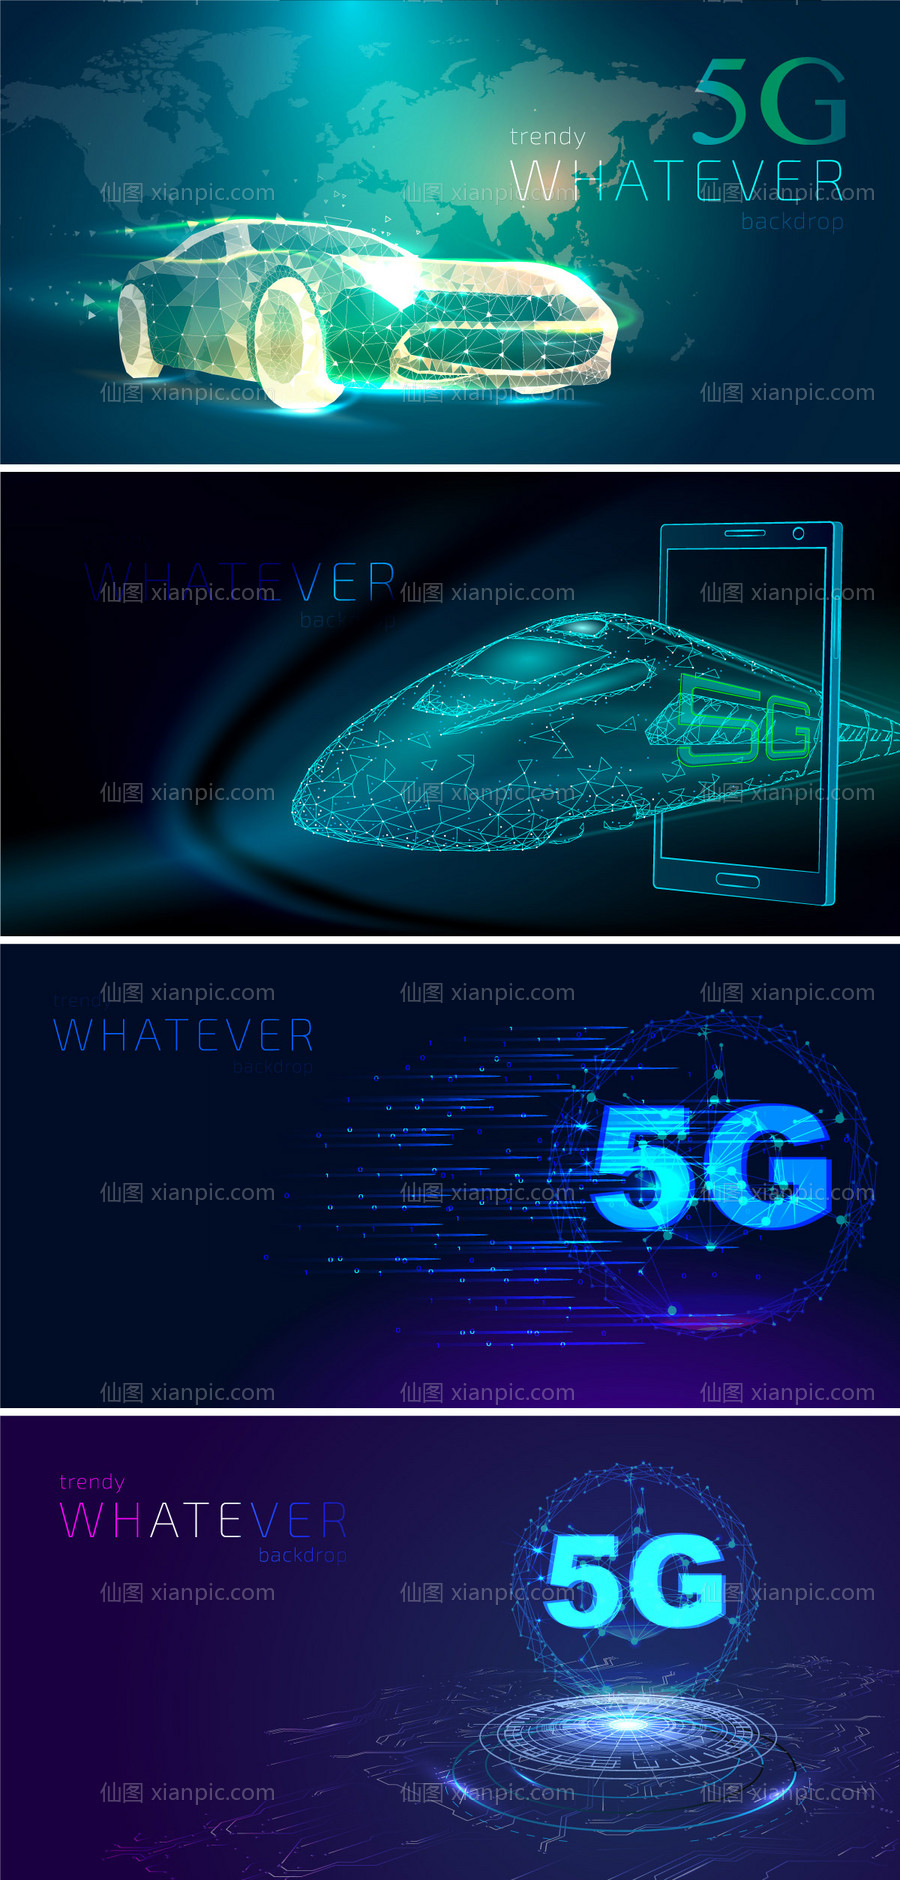 素材乐-5G网络科技矢量素材